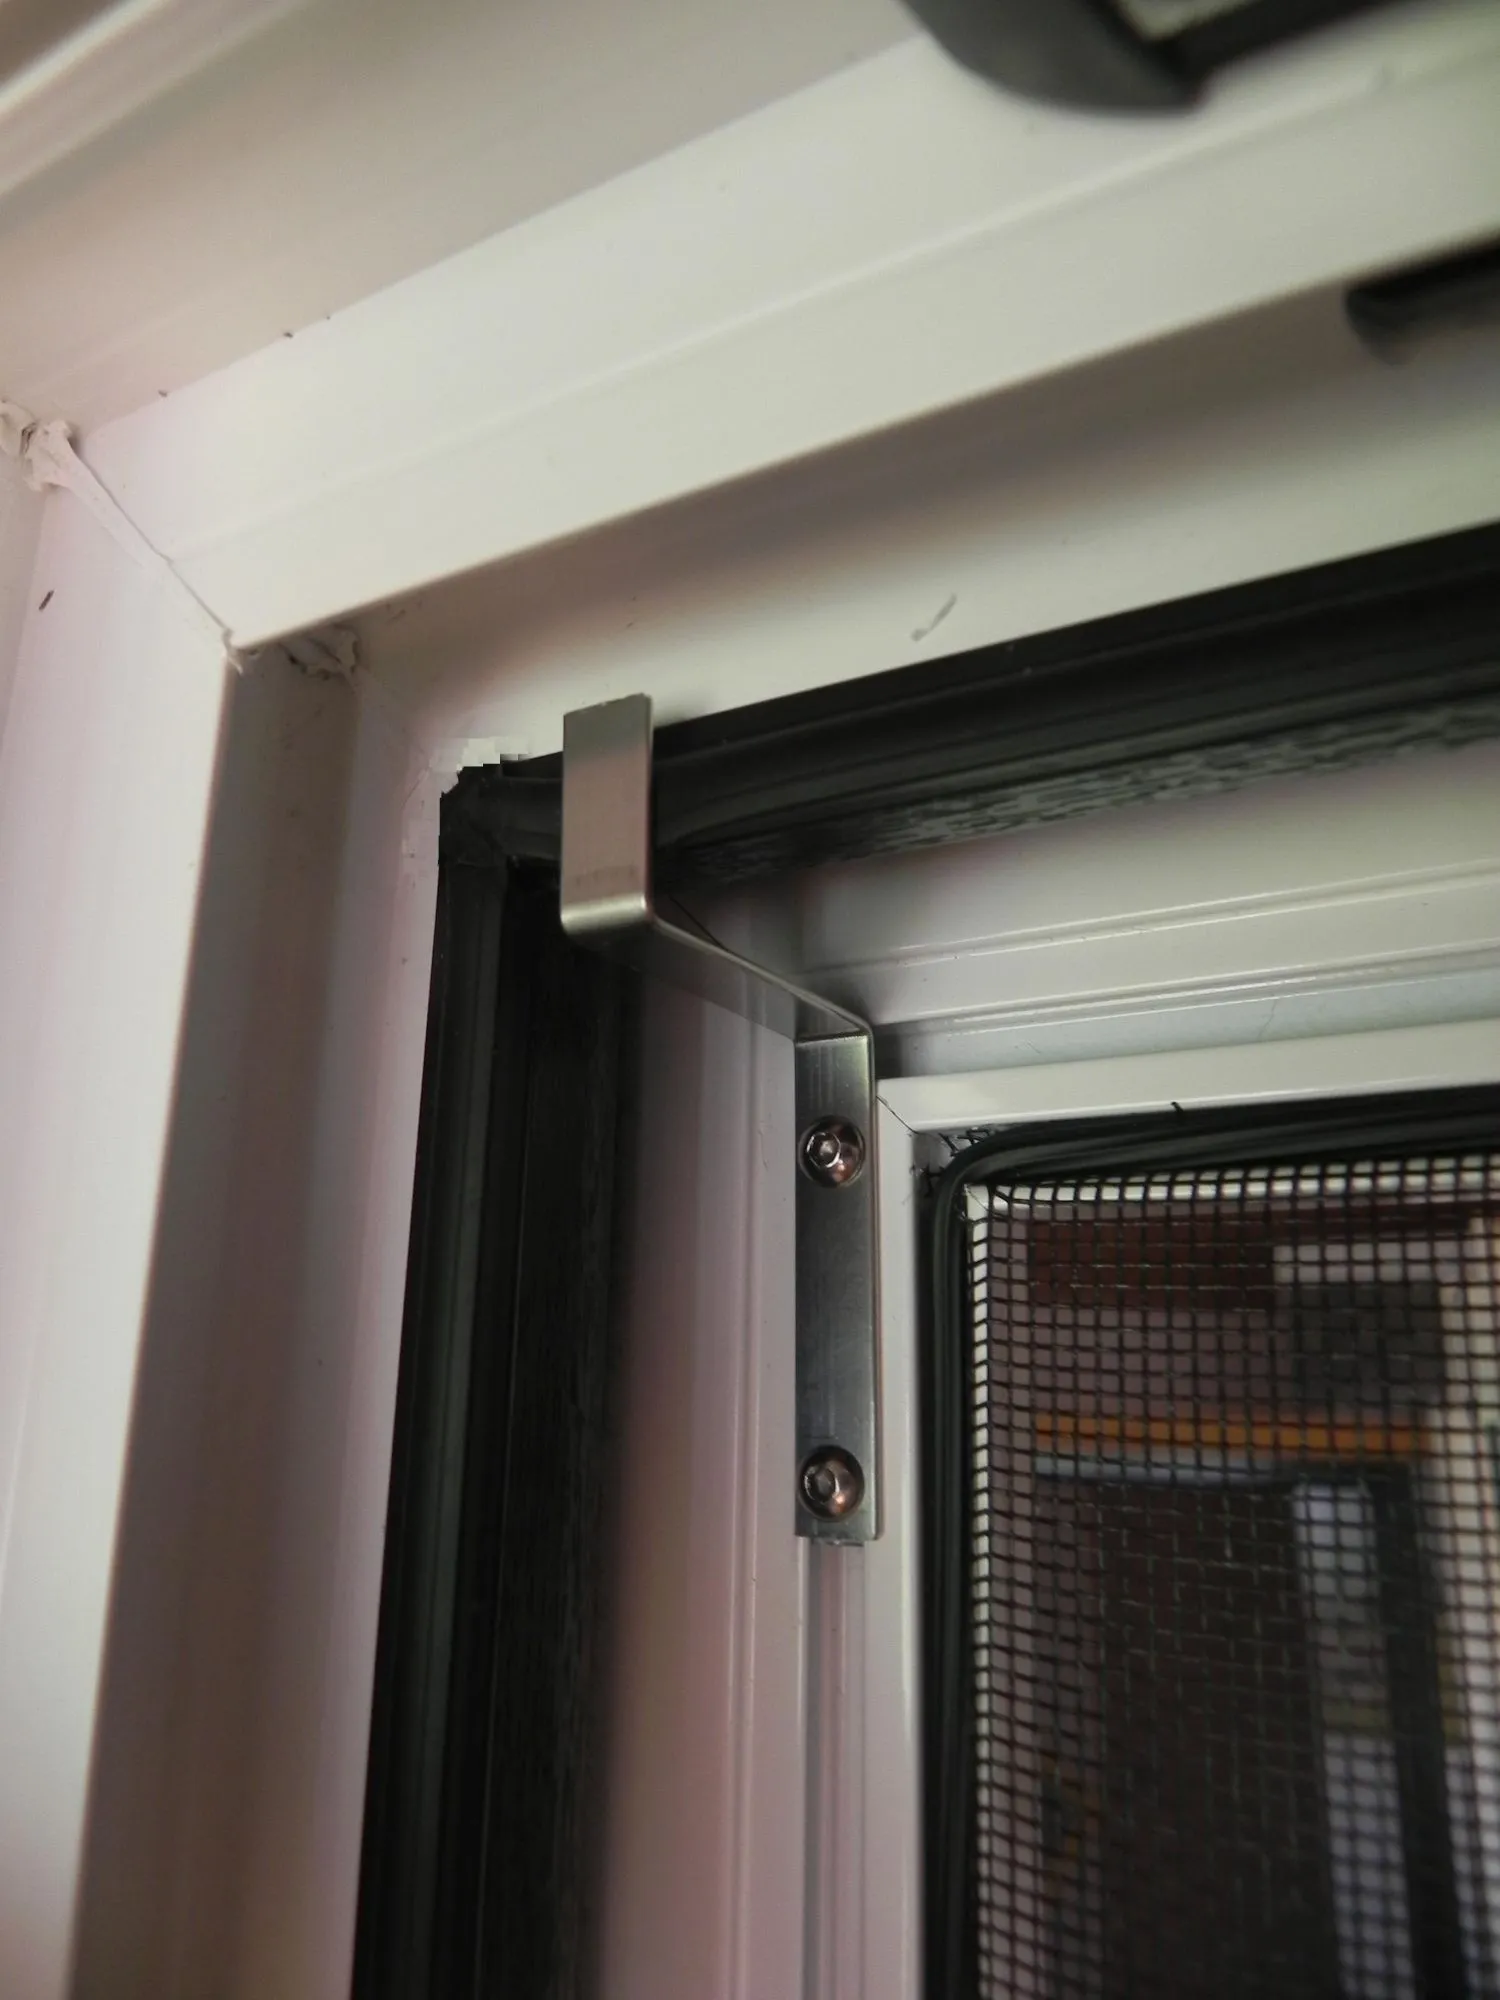 Huber Franz - Insektenschutz - Fenster - Türen – Scharnier an der Oberseite des Spannrahmens